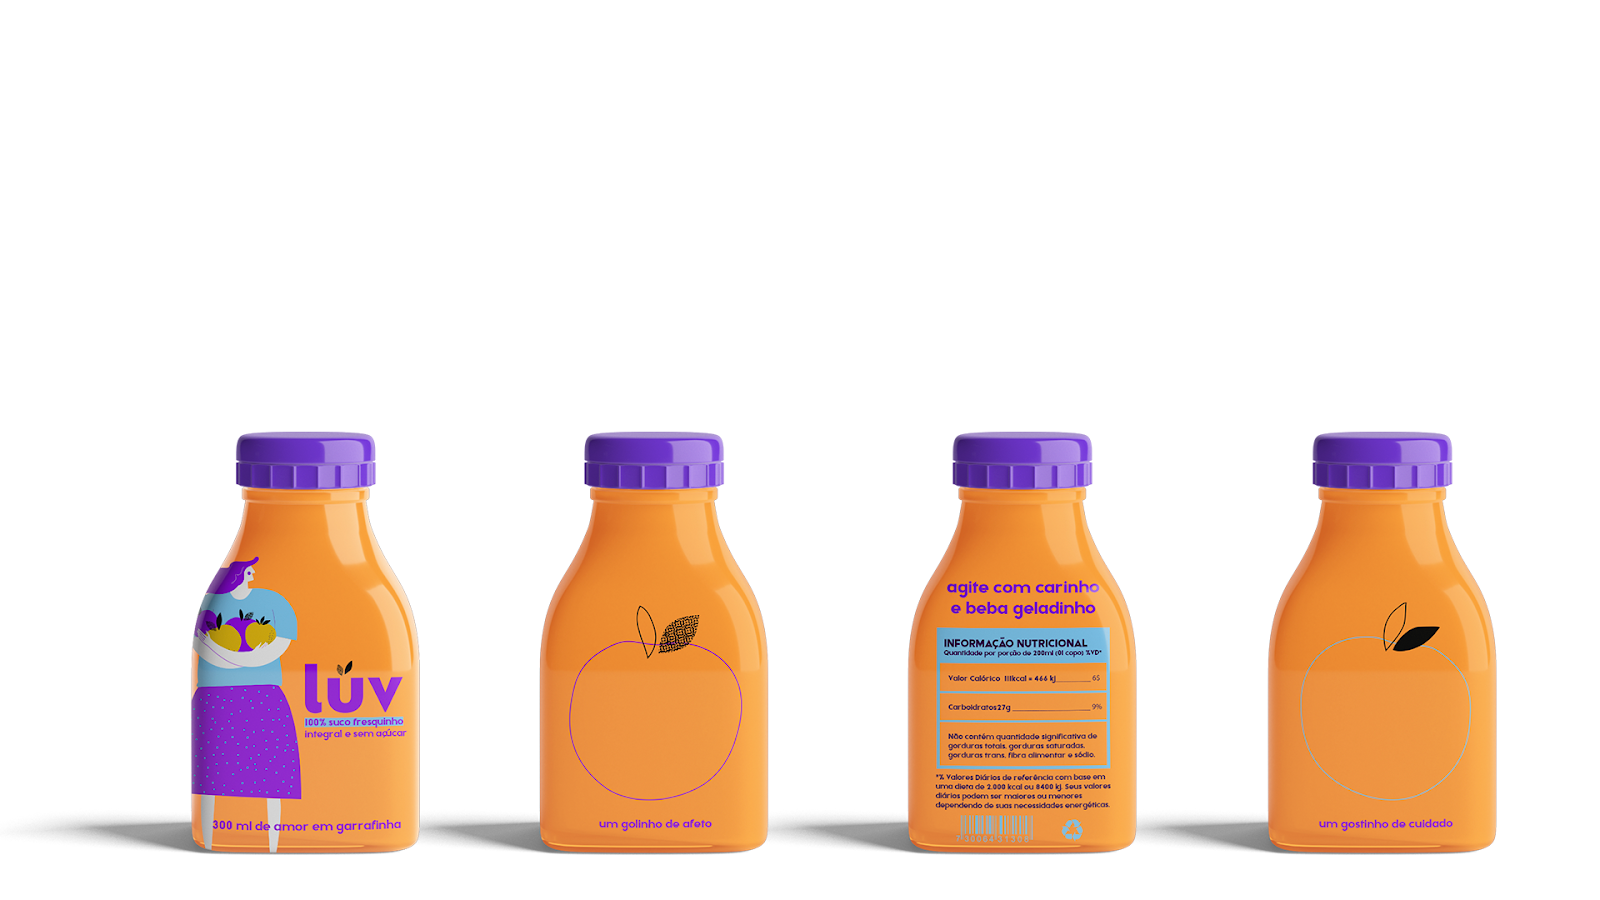 果汁饮料饮品西安kok在哪里_kok全站娱乐
品牌策划包装设计VI设计logo设计